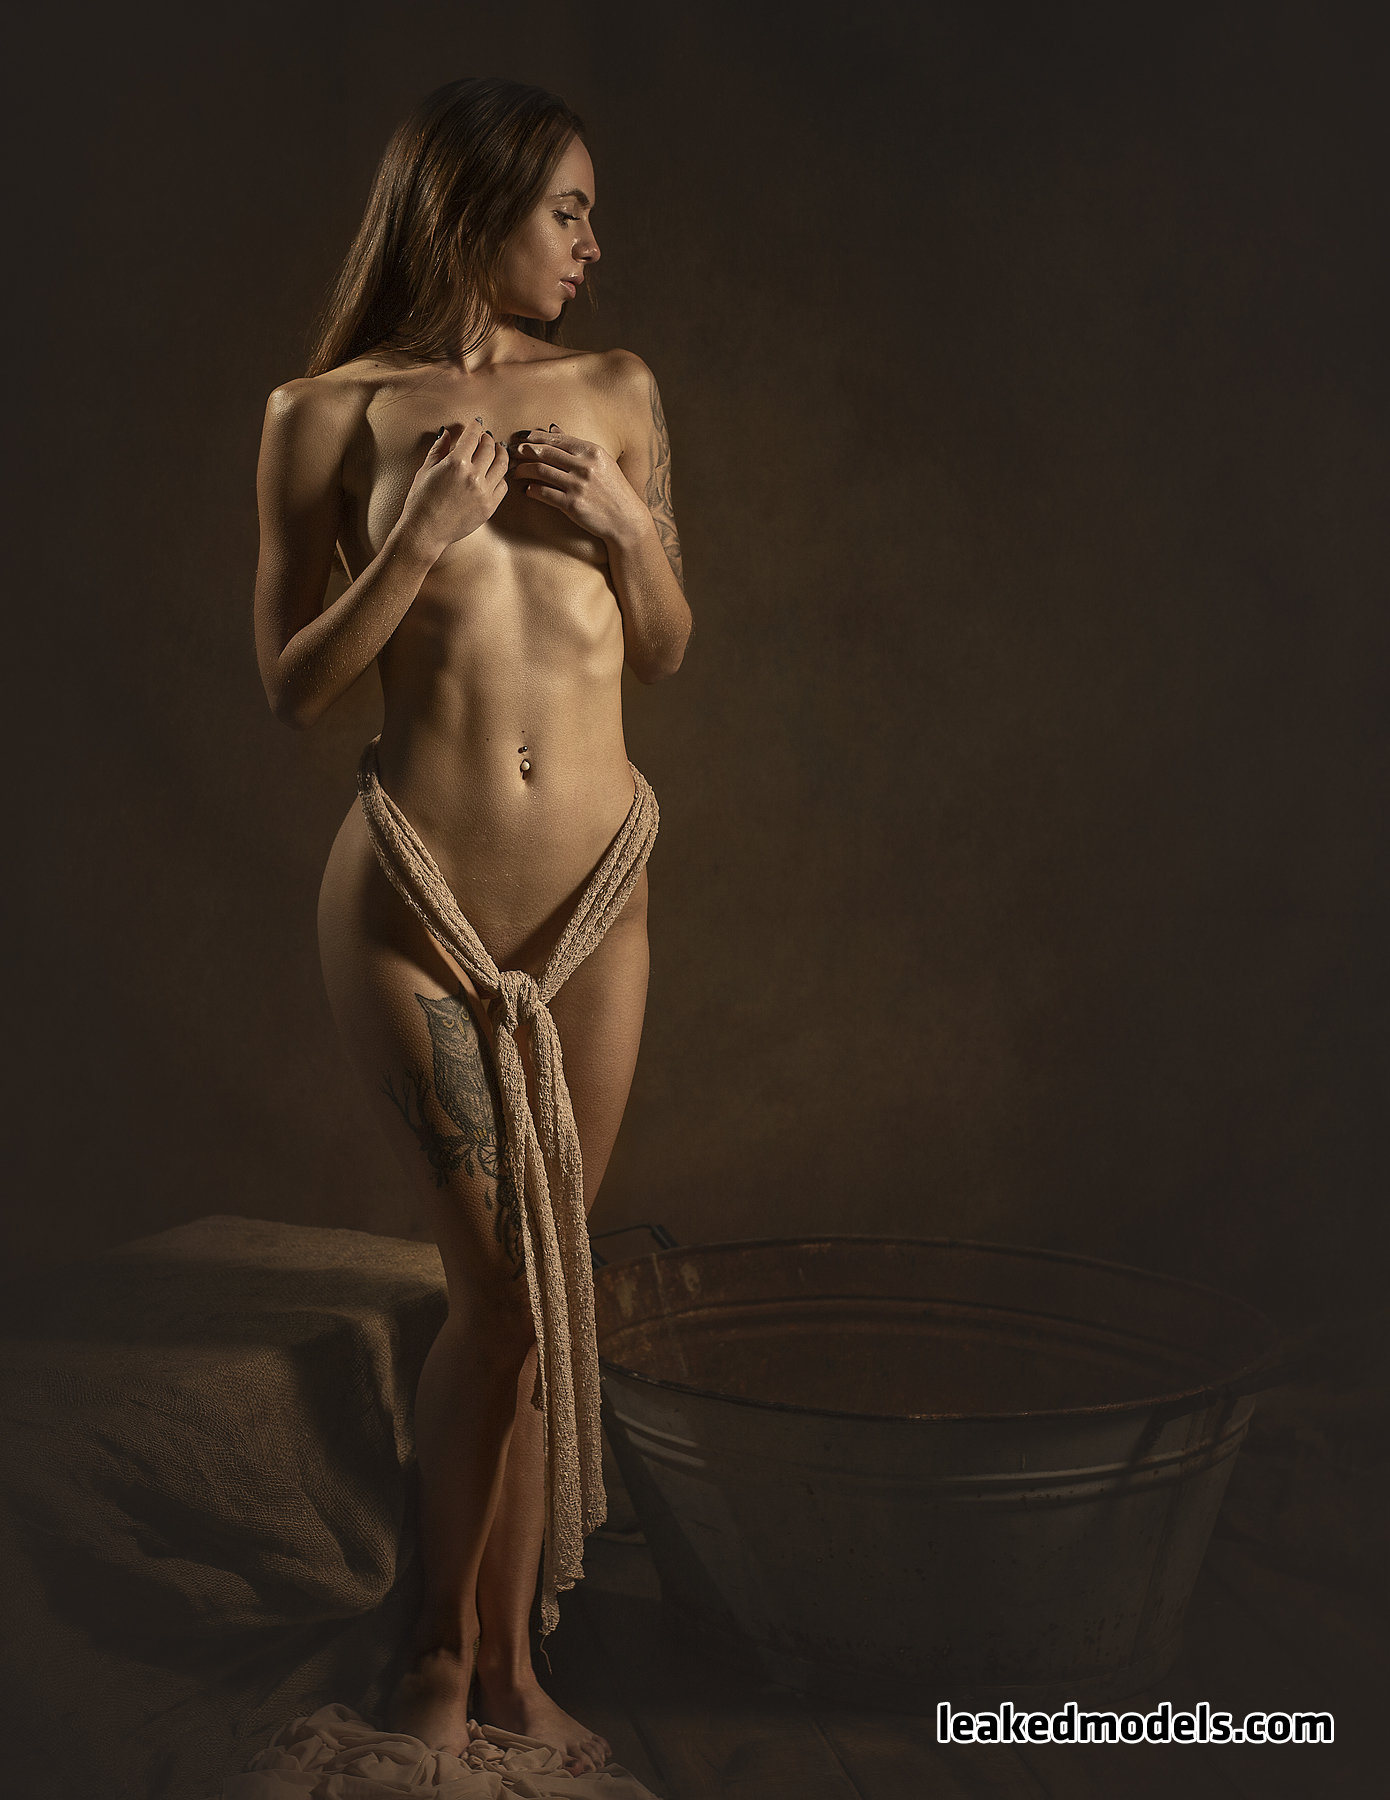 kamila salkova leaked nude leakedmodels.com 0016 - Kamila Salkova – kamila_salkova Instagram Nude Leaks (35 Photos)